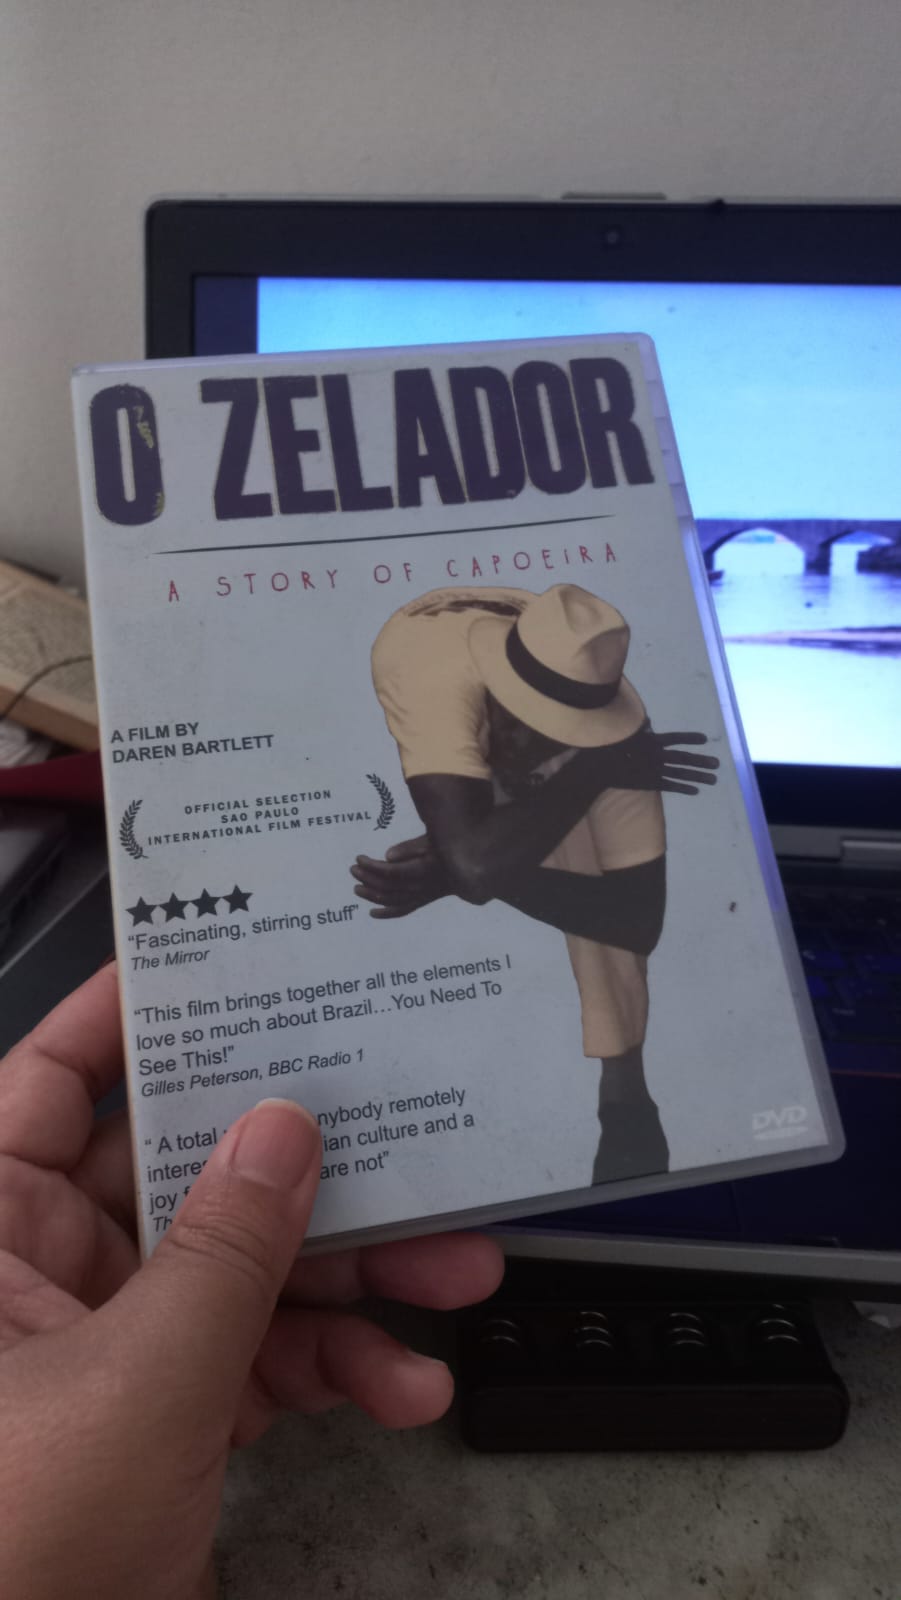 DVD do filme O Zelador, com Mestre Russo